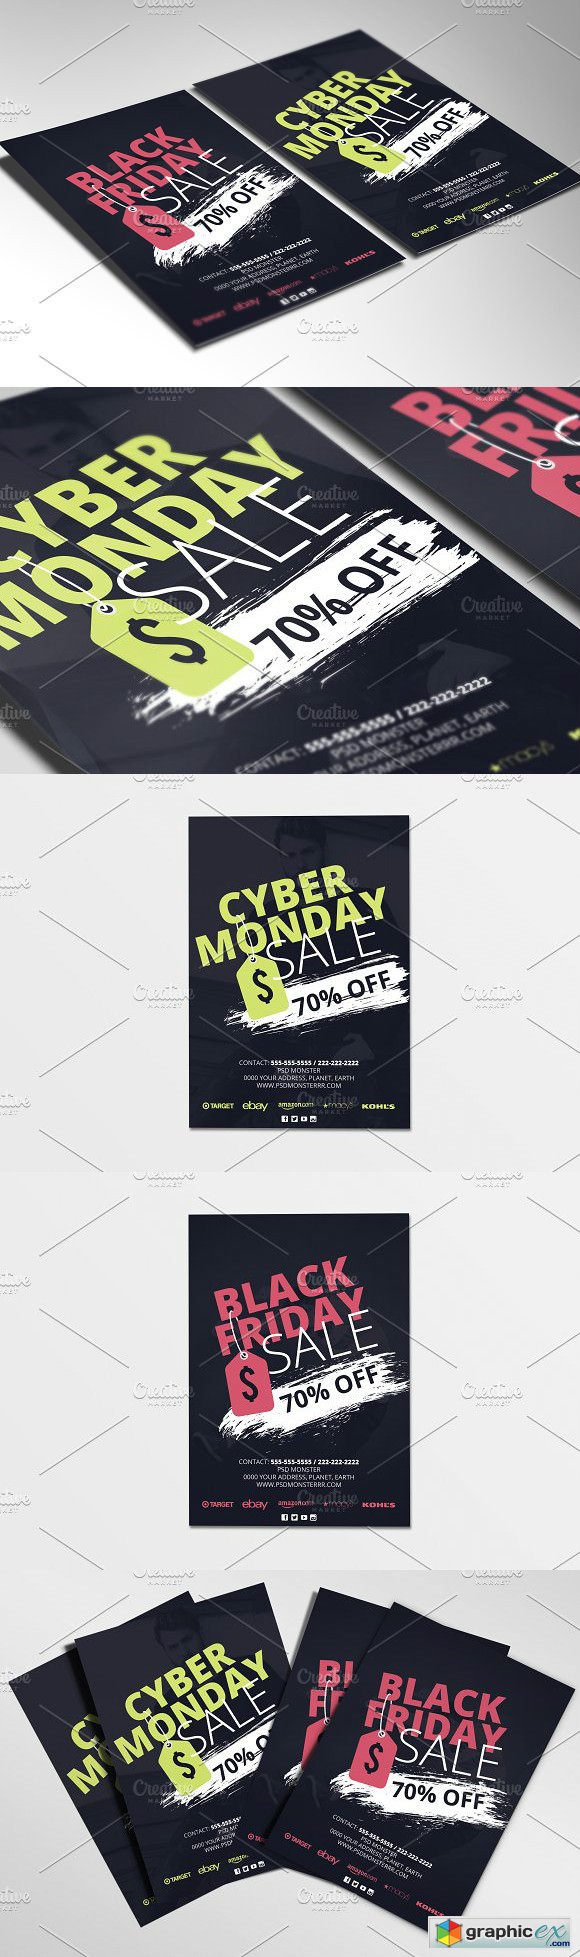 Black Friday Cyber Monday Flyer V1